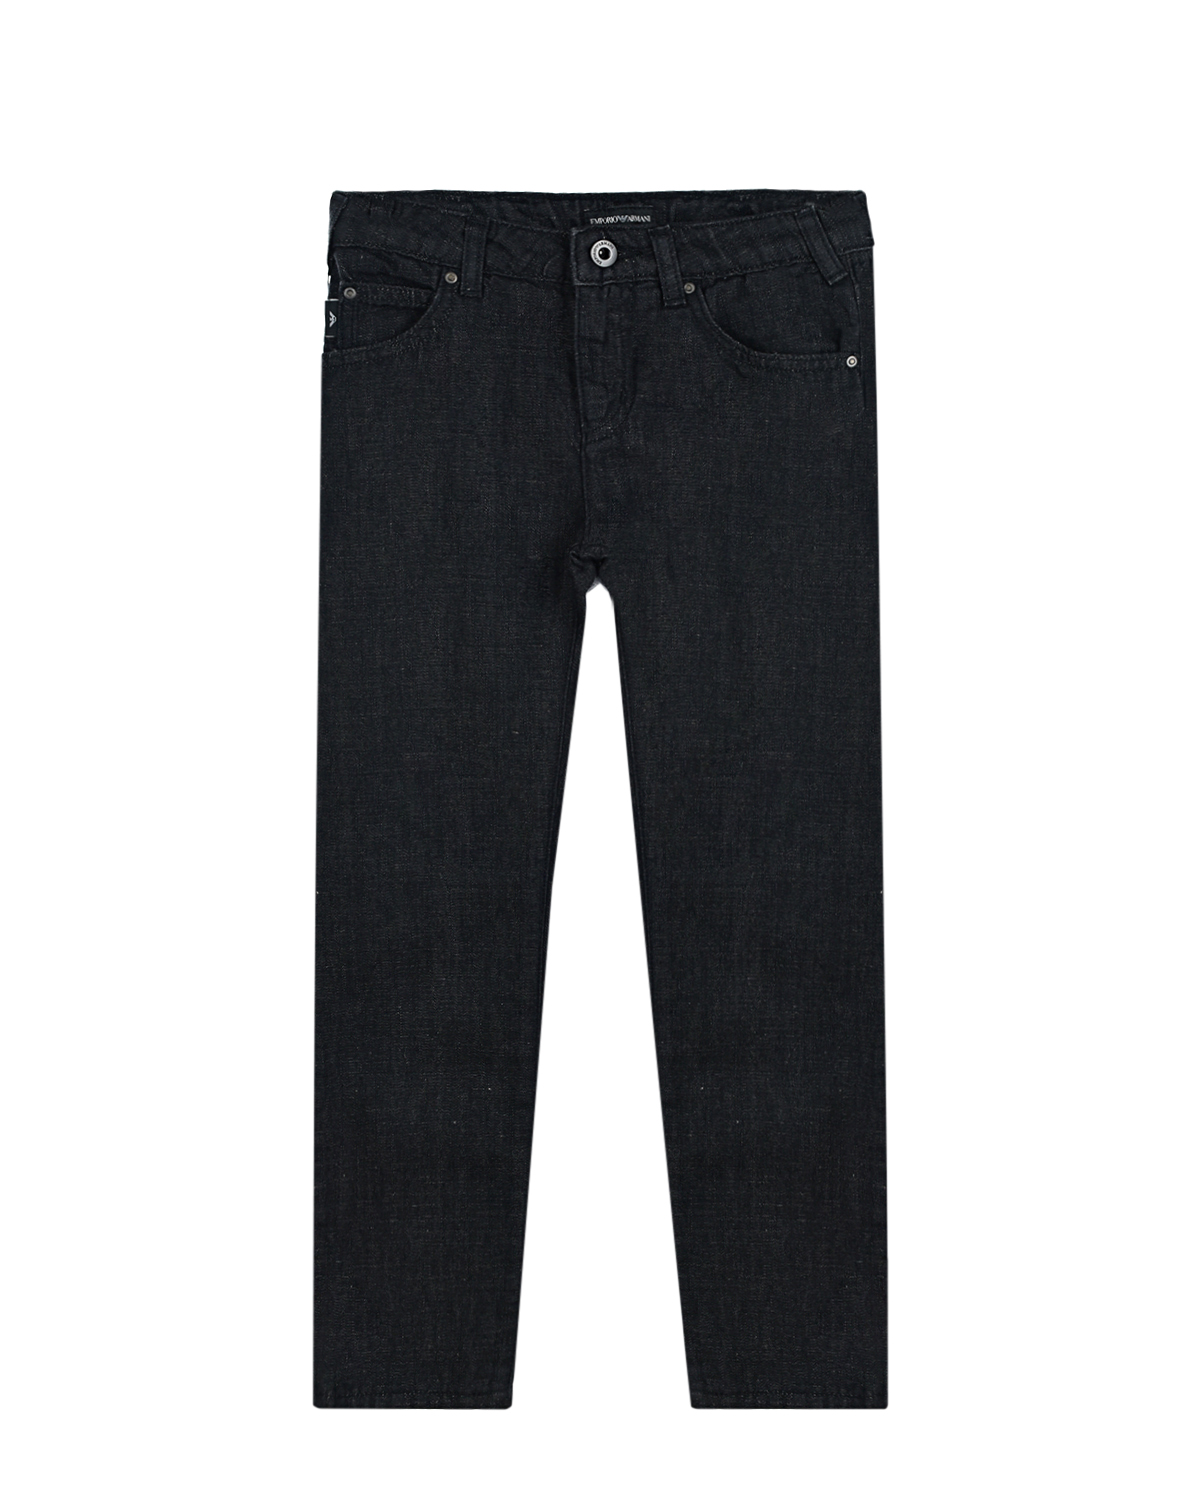 Черные джинсовые брюки Emporio Armani детские, размер 134, цвет черный